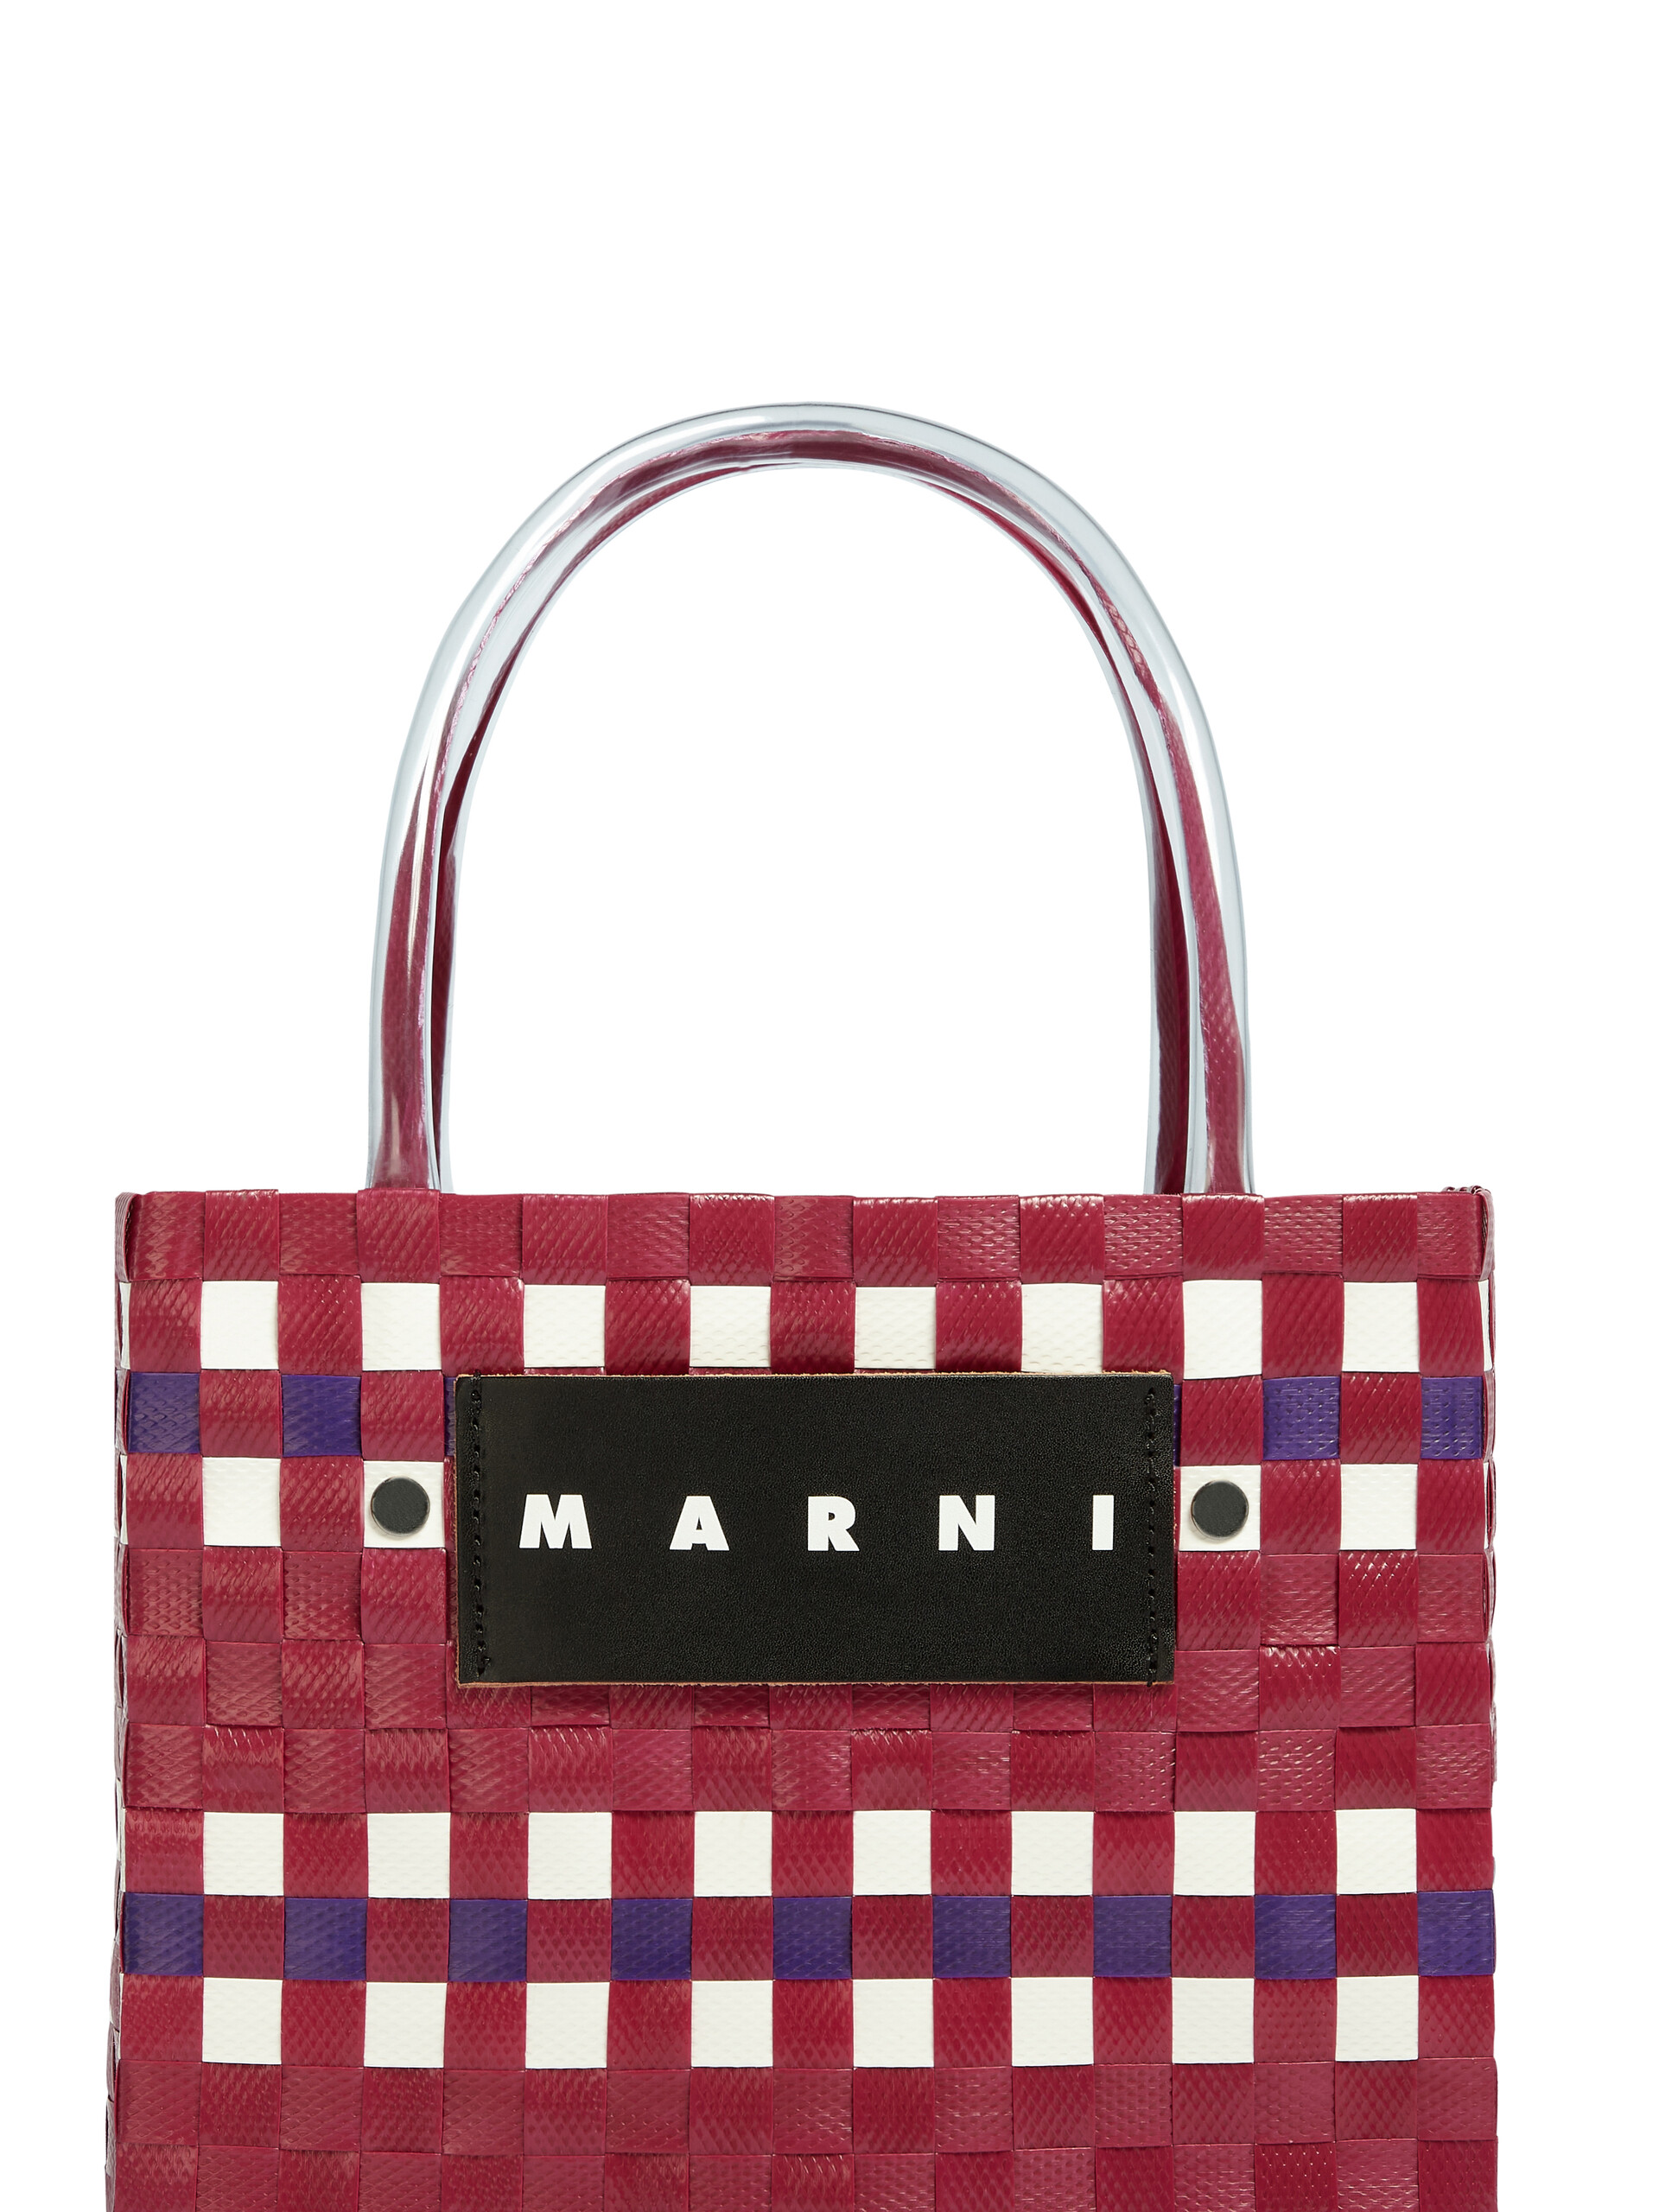 MARNI MARKET shopping bag in pink polypropylene - Bags - Image 4